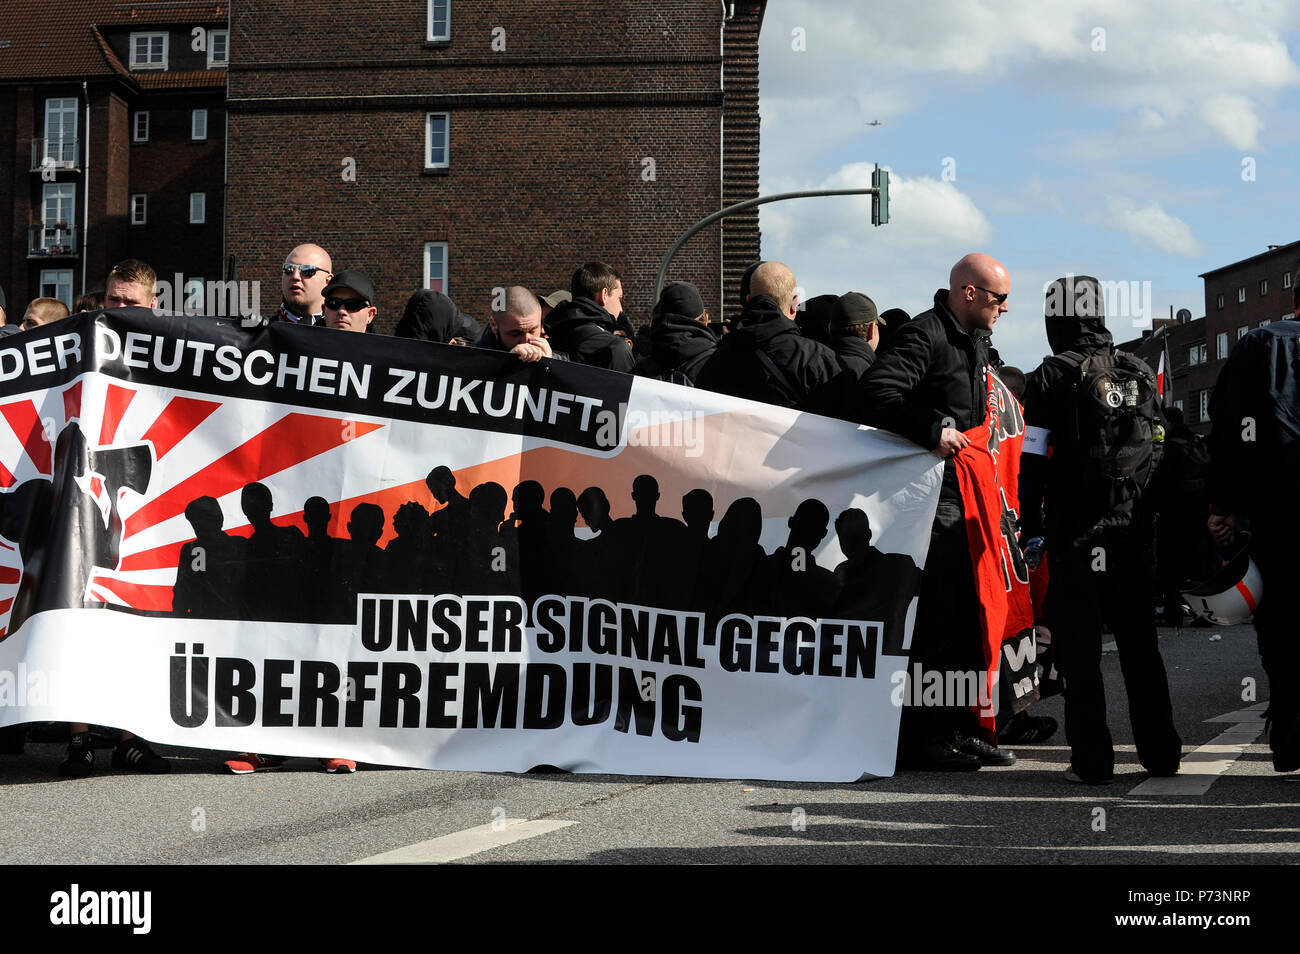 Germania, rally del nazismo e del diritto dei gruppi estremisti di Amburgo, banner contro straniero immigrazione Foto Stock